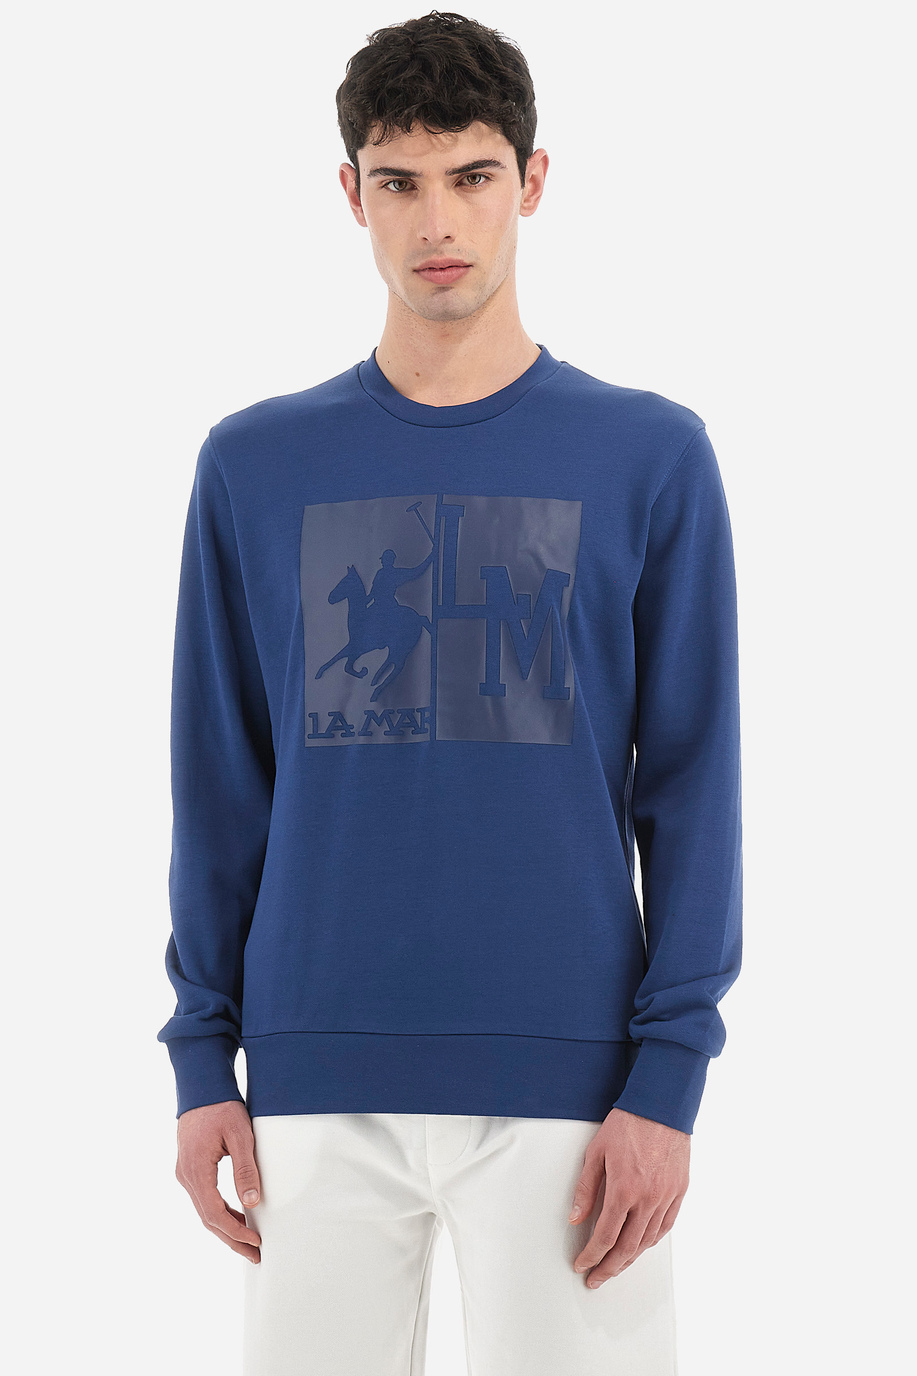 Langarm-Sweatshirt aus Baumwollmischung mit Rundhalsausschnitt in normaler Passform für Herren - Varrick - Herren | La Martina - Official Online Shop